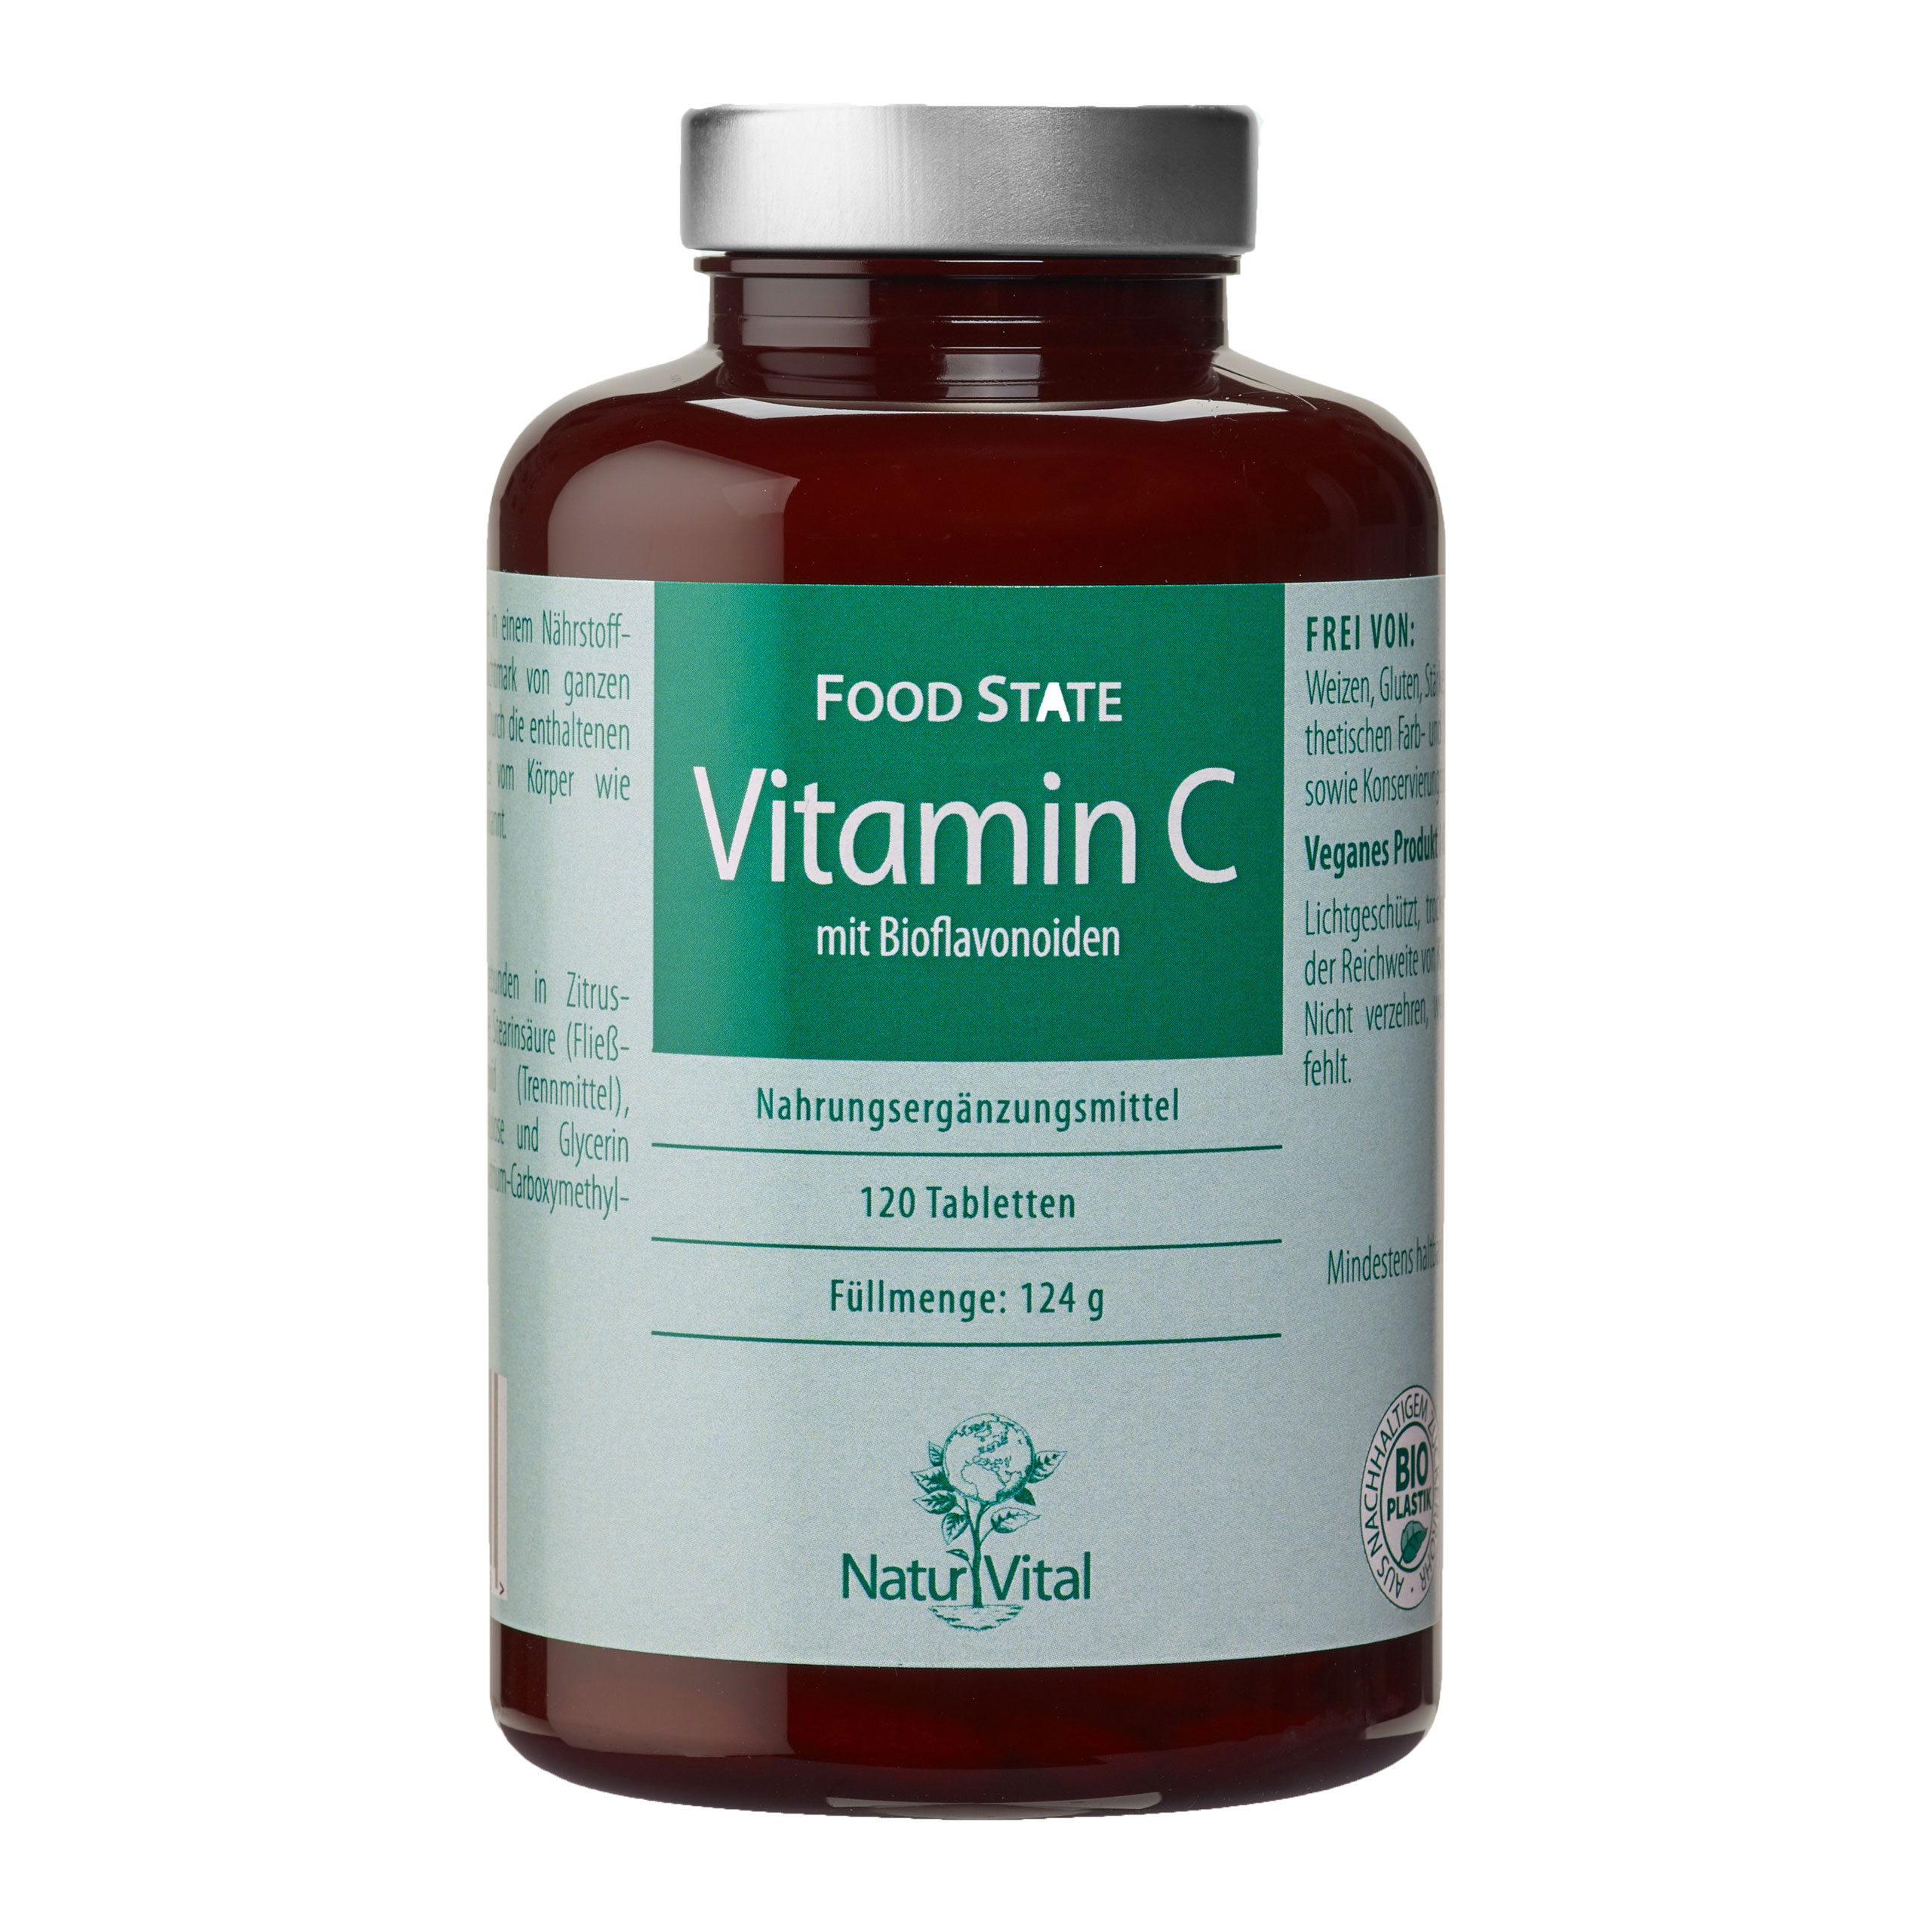 Vitamin C mit Bioflavonoiden von Natur Vital beinhaltet 120 Kapseln